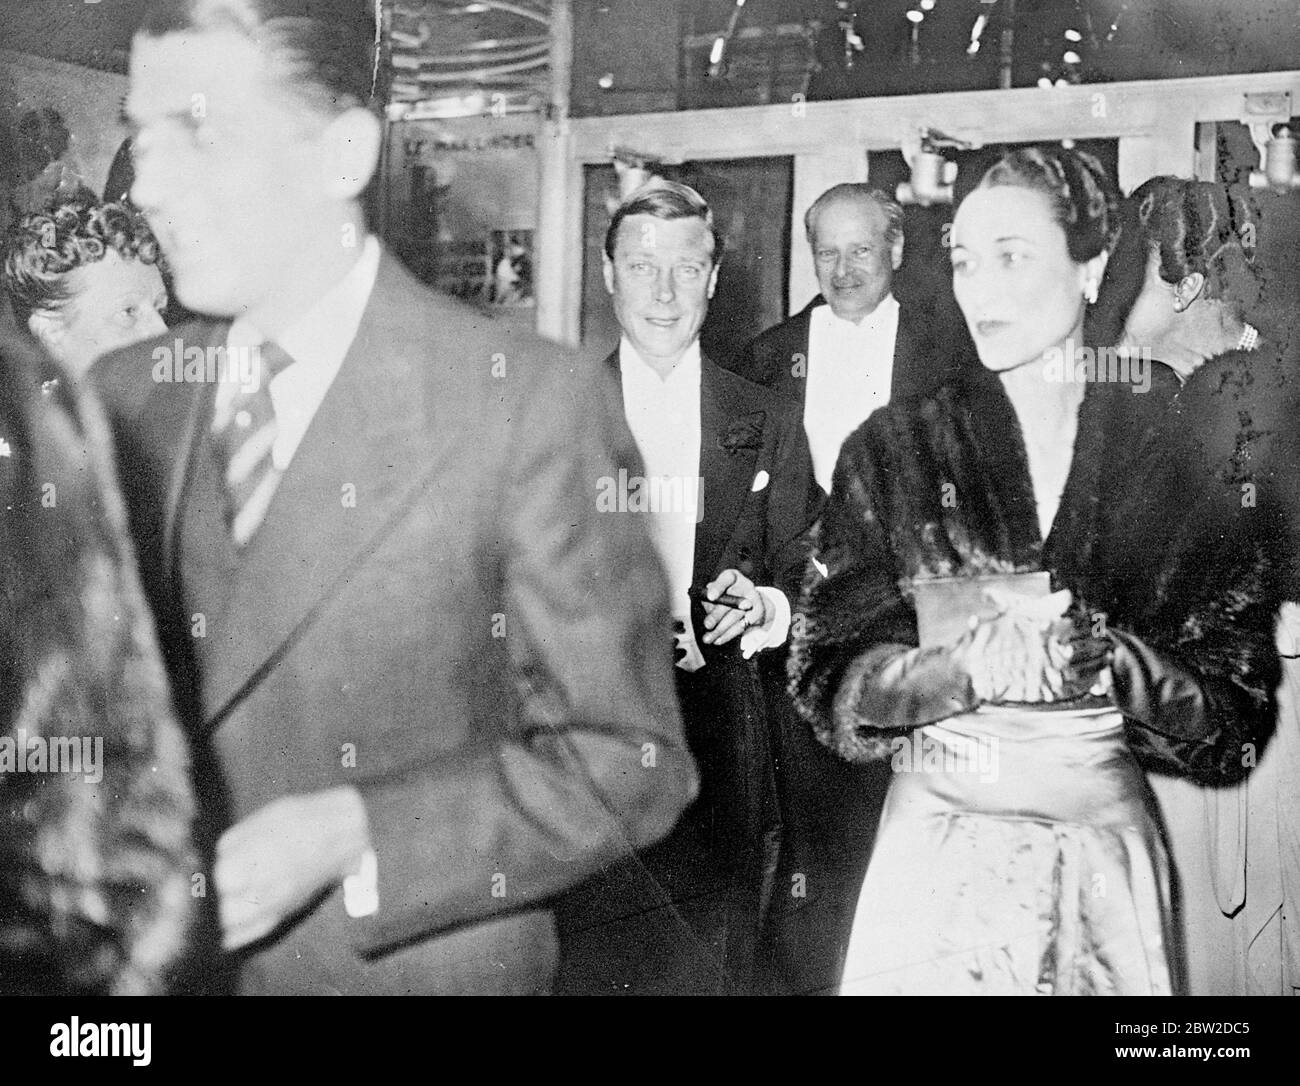 Le duc et la duchesse de Windsor, le prince Edward VIII et Wallis Simpson assistent à la première du film Katie au théâtre Marivaux à Paris. Photos : le duc et la duchesse arrivent pour la première. 20 octobre 1938 Banque D'Images